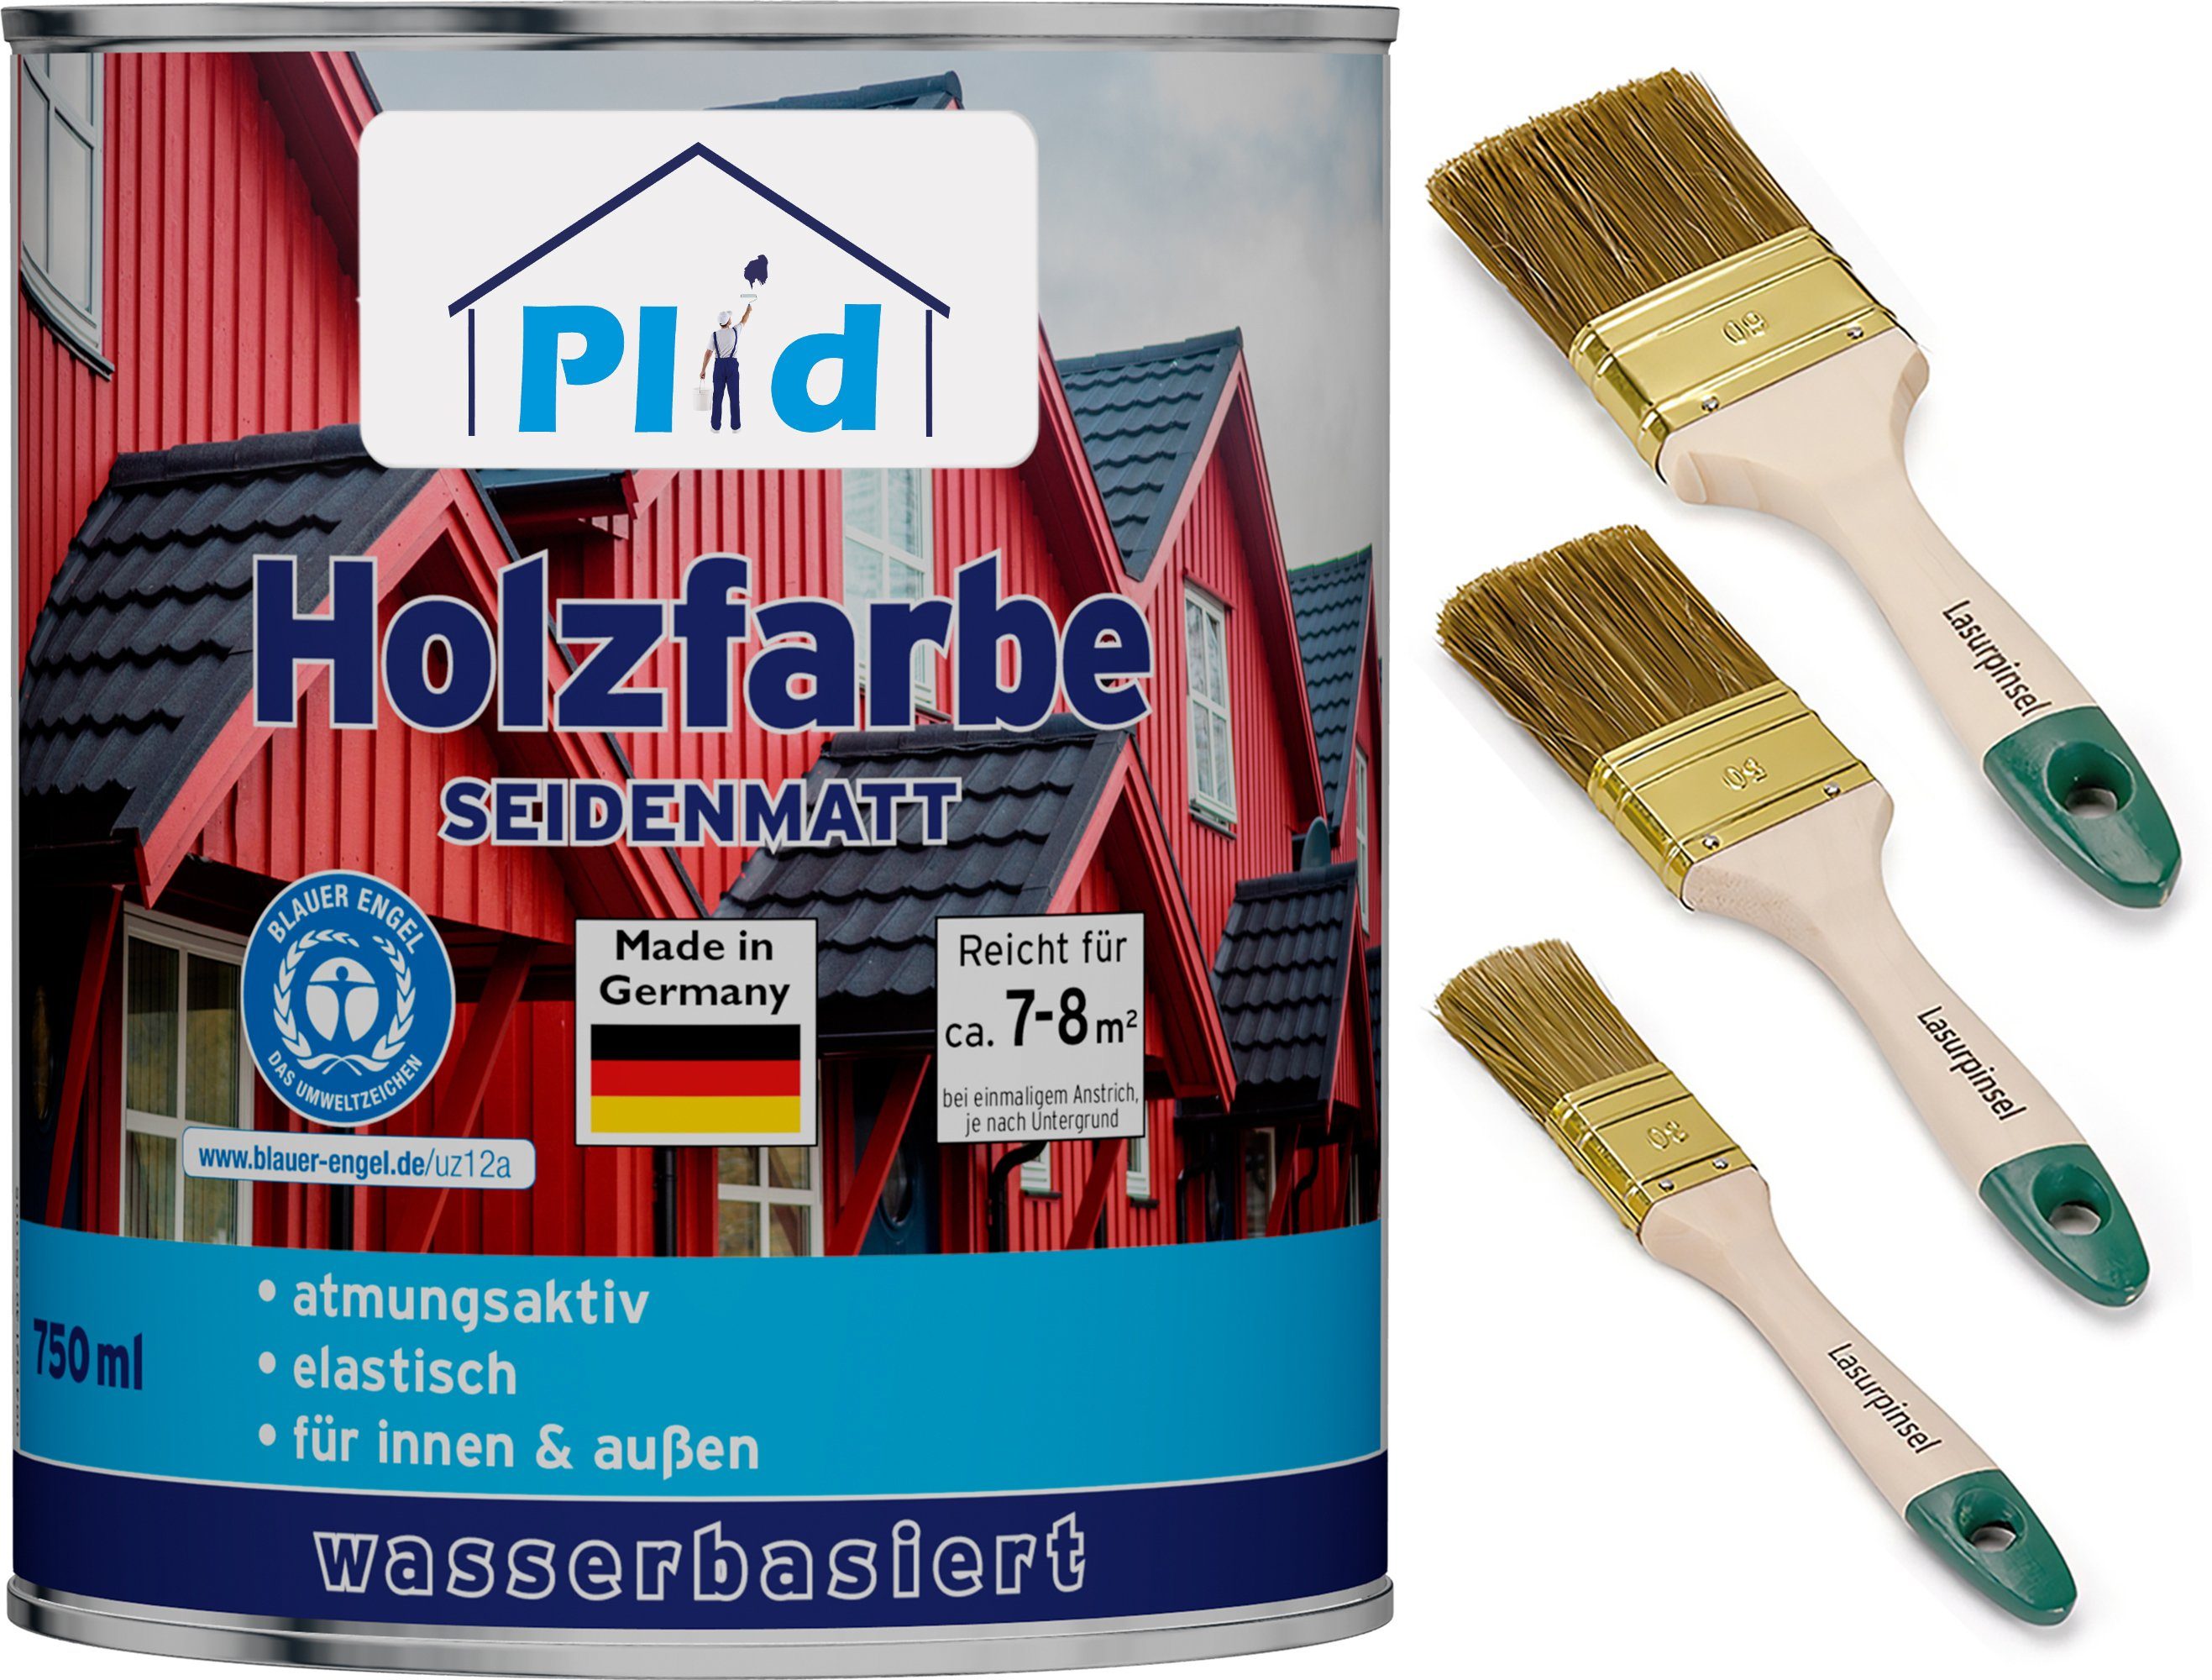 plid Holzlack Premium Holzfarbe Holzlack Farbe für Holz Pinsel, Schnelltrocknend, verarbeitungsfertig Silbergrau